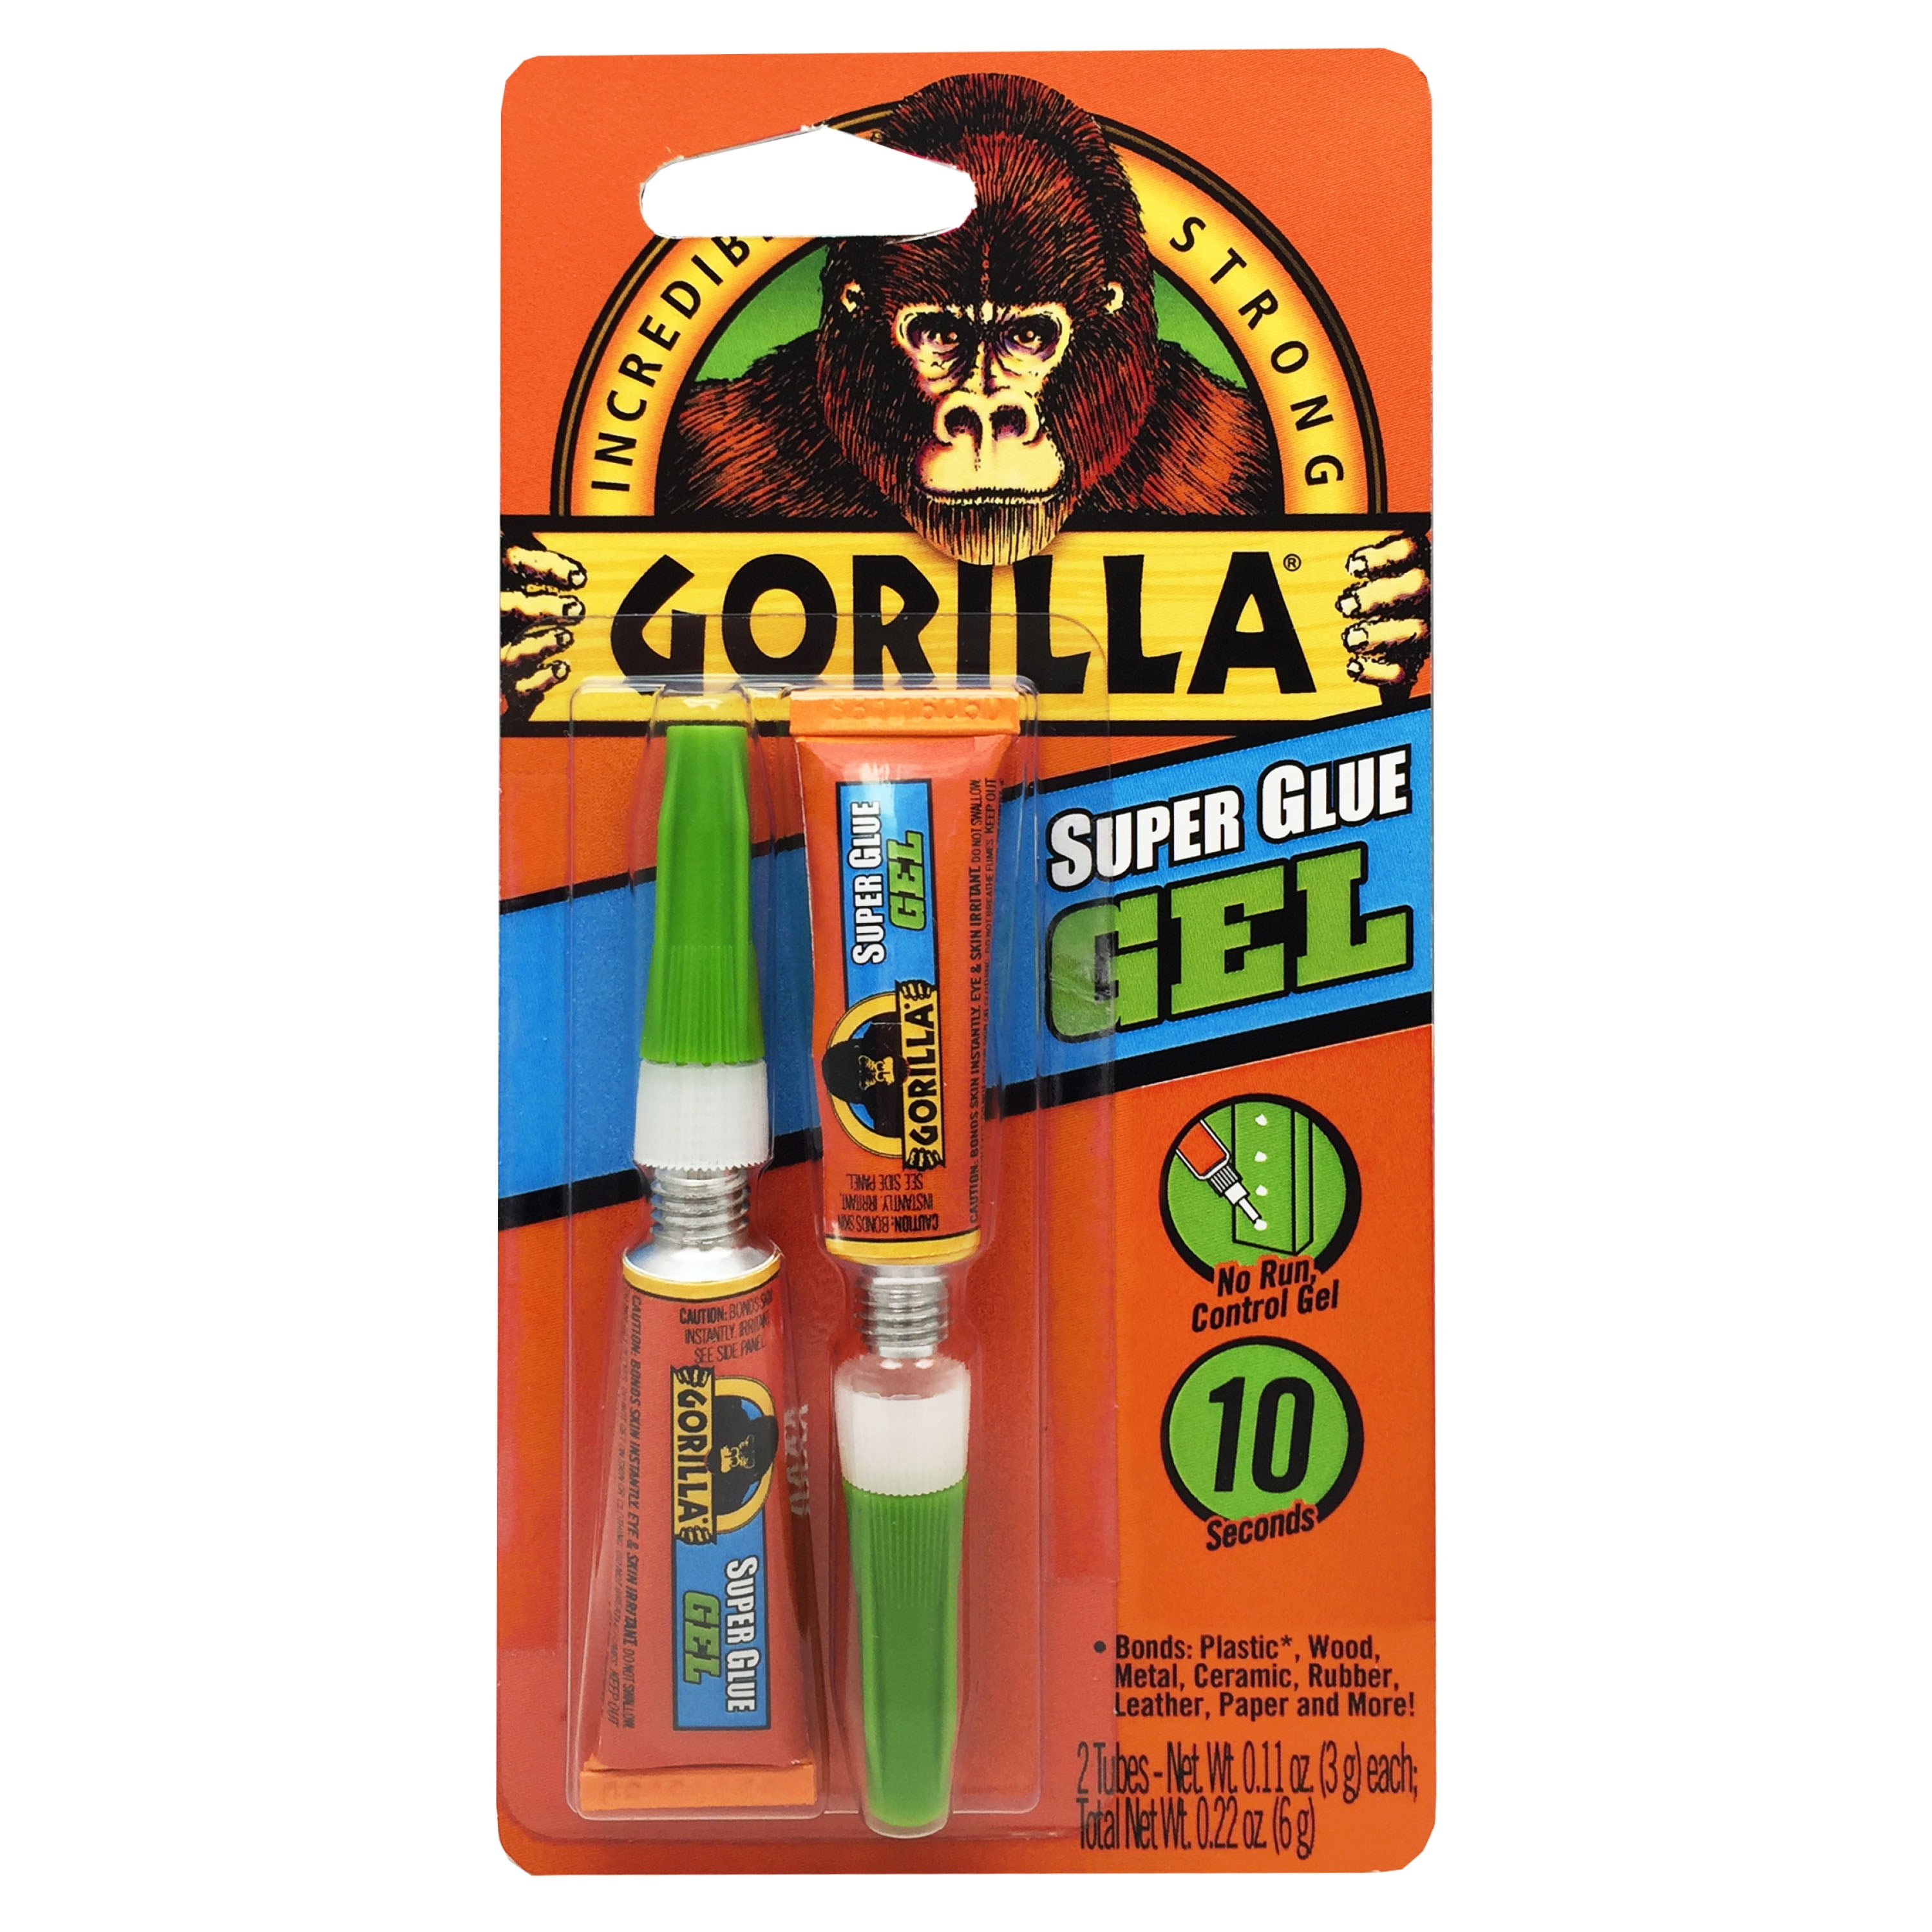 Gorilla Super Glue Gel 2-3g Tubes